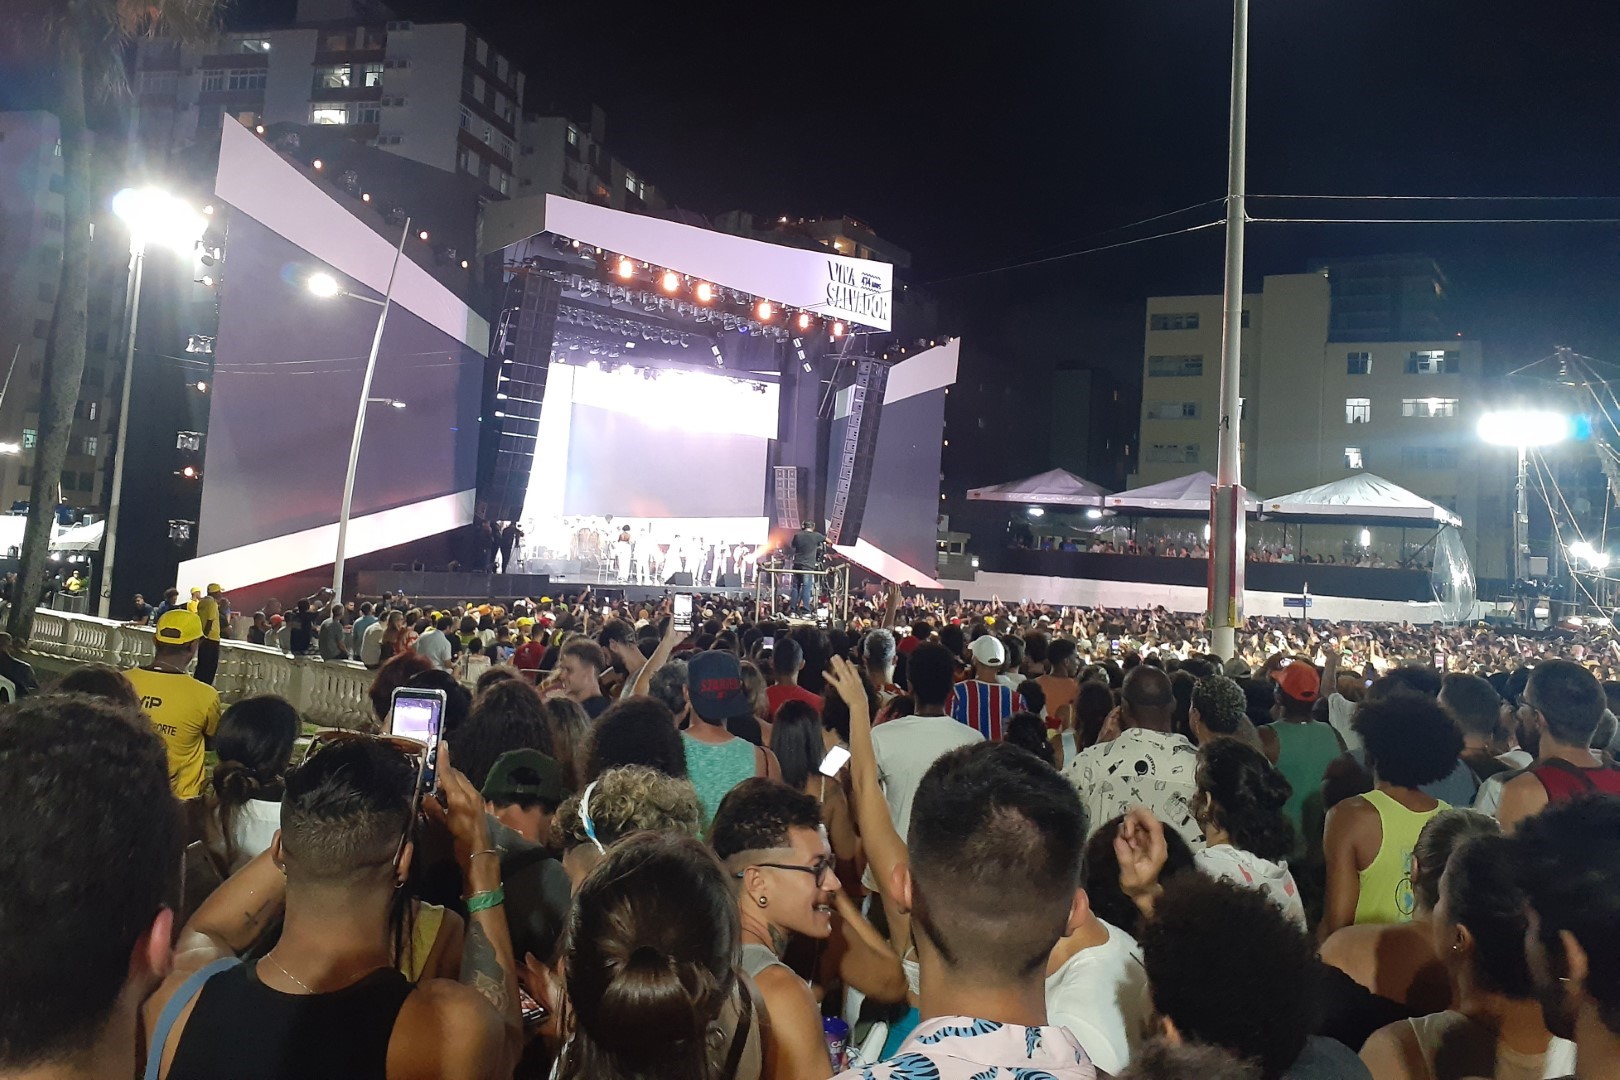 Gilberto Gil playing for the Anniversary of Salvador festival, Largo do Farol da Barra, Salvador - State of Bahia